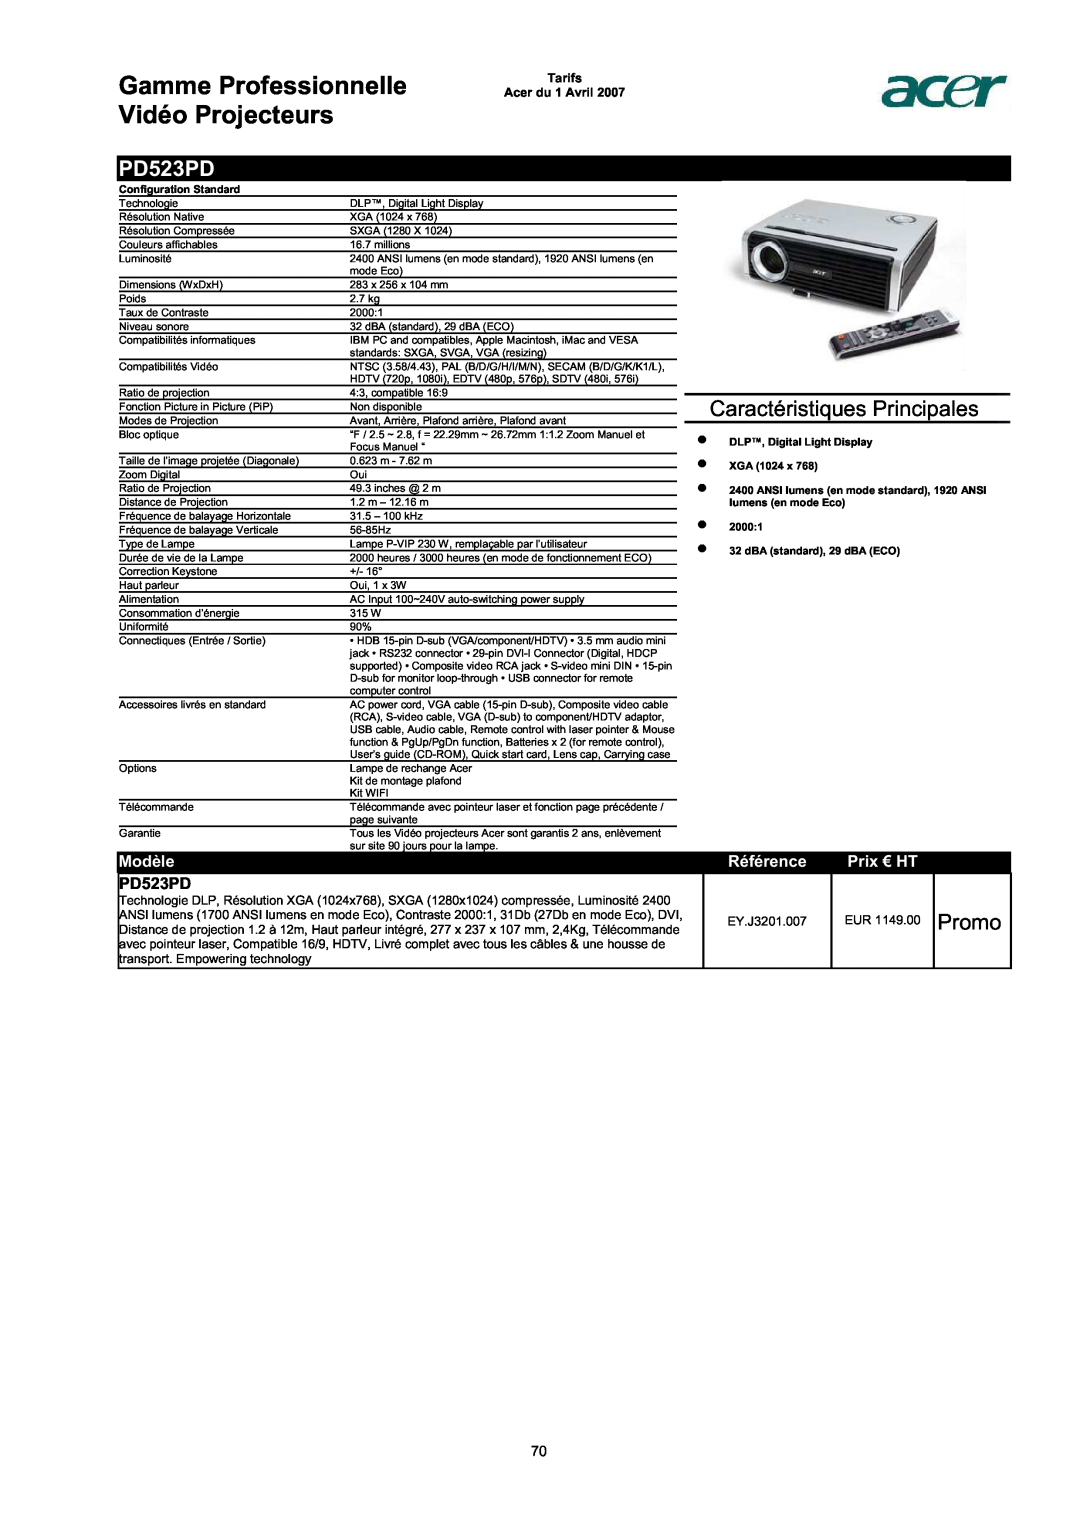 Acer AC713B-17 PD523PD, Promo, Gamme Professionnelle Vidéo Projecteurs, Caractéristiques Principales, Modèle, Référence 